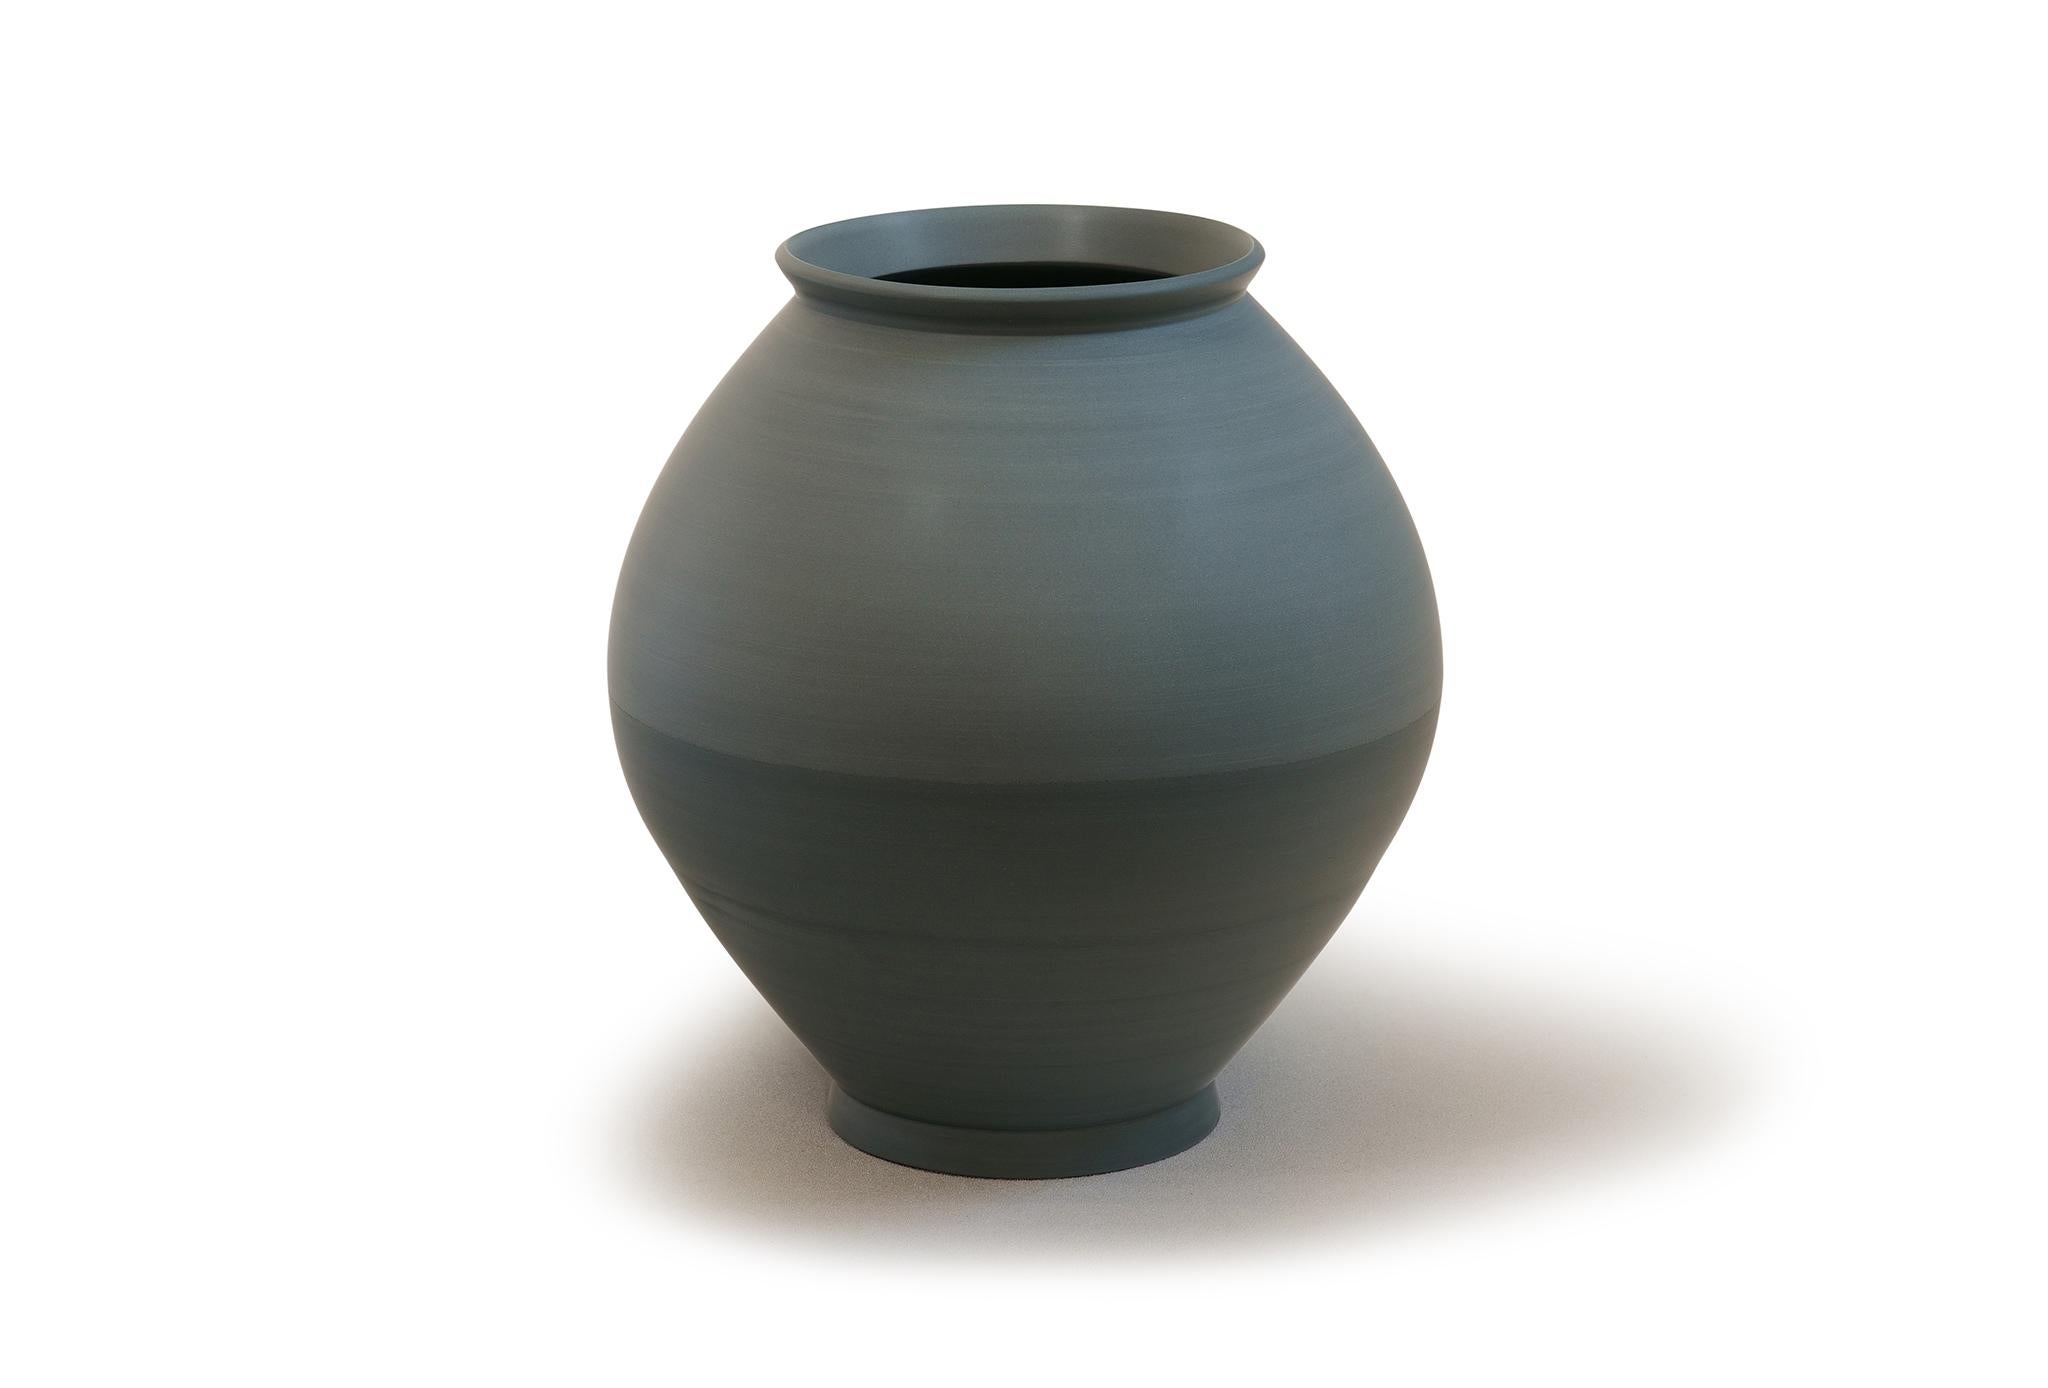 Demi-vase de Jung Hong
Pièce unique
Dimensions : L 32 x P 32 x H 34 cm
Matériaux : Porcelaine

J'utilise la technique du 